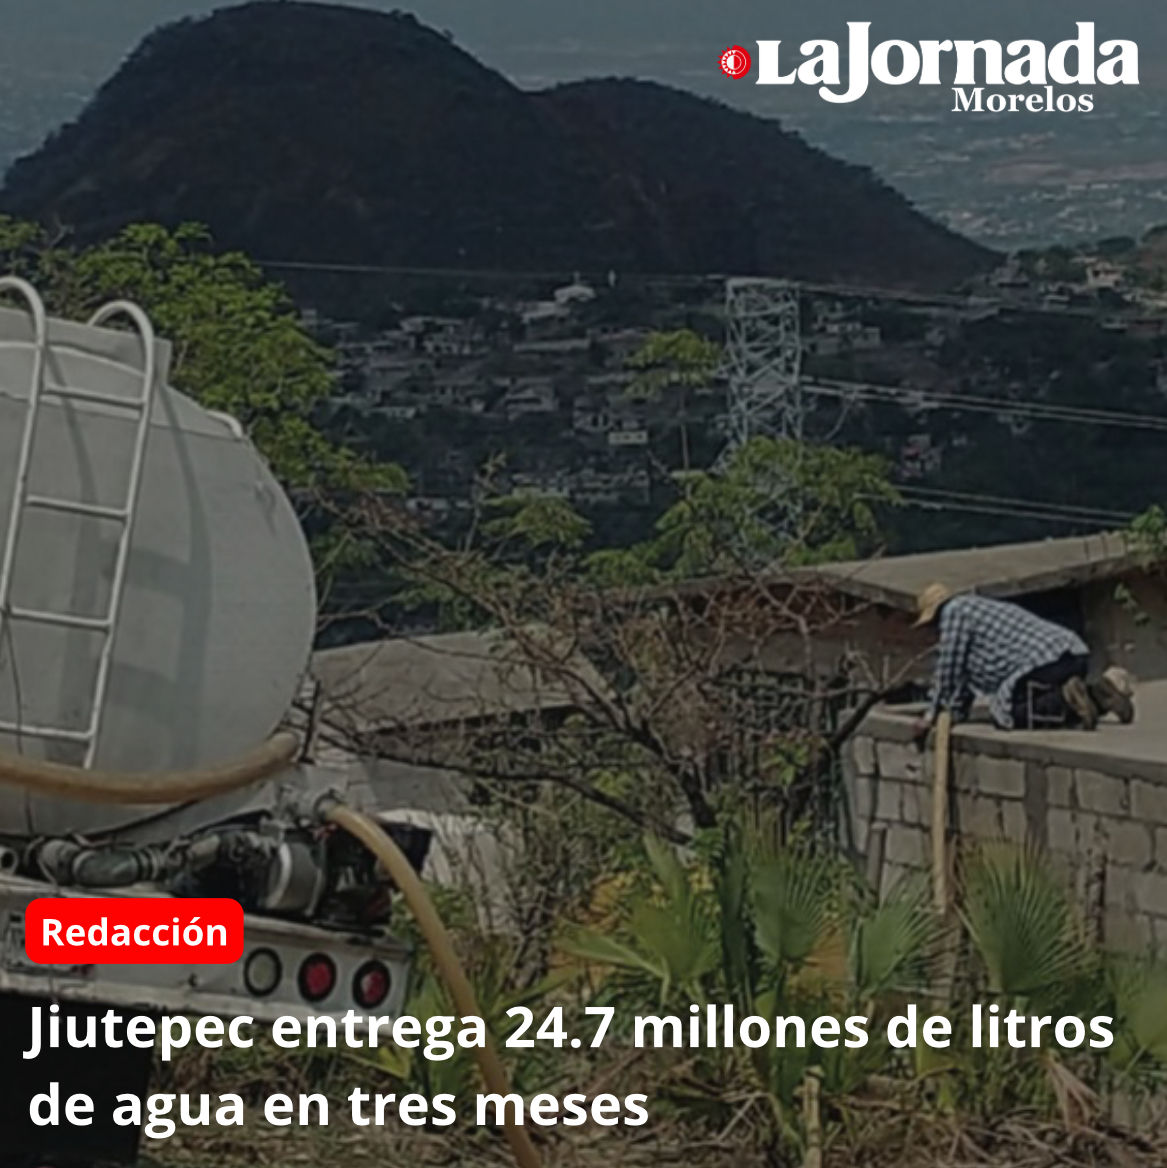 Jiutepec entrega 24.7 millones de litros de agua en tres meses